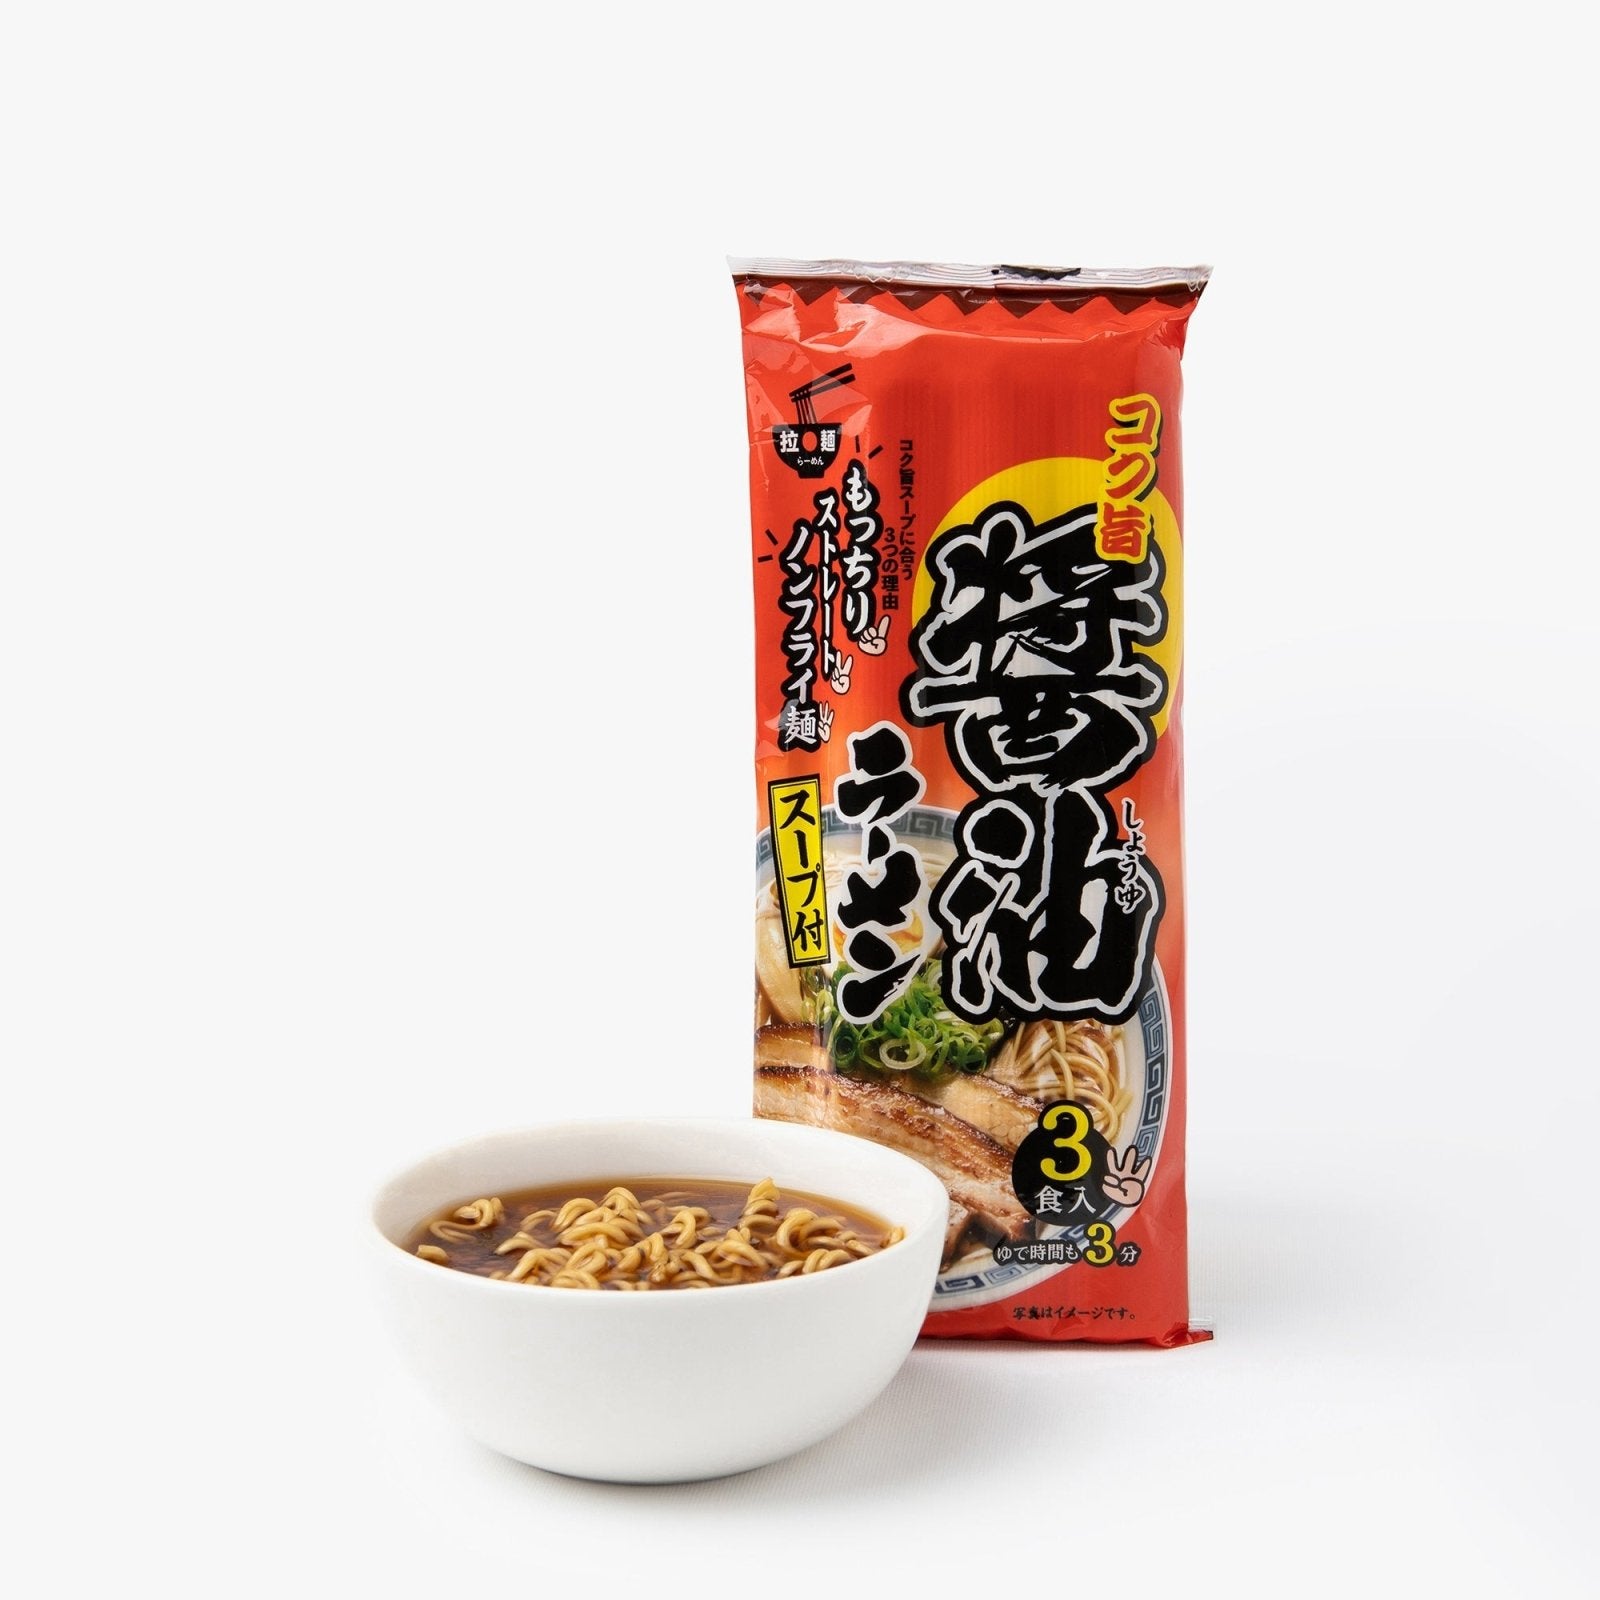 Ramen à la sauce soja (3 portions) - 247.8g - Tanaka Bussan - iRASSHAi